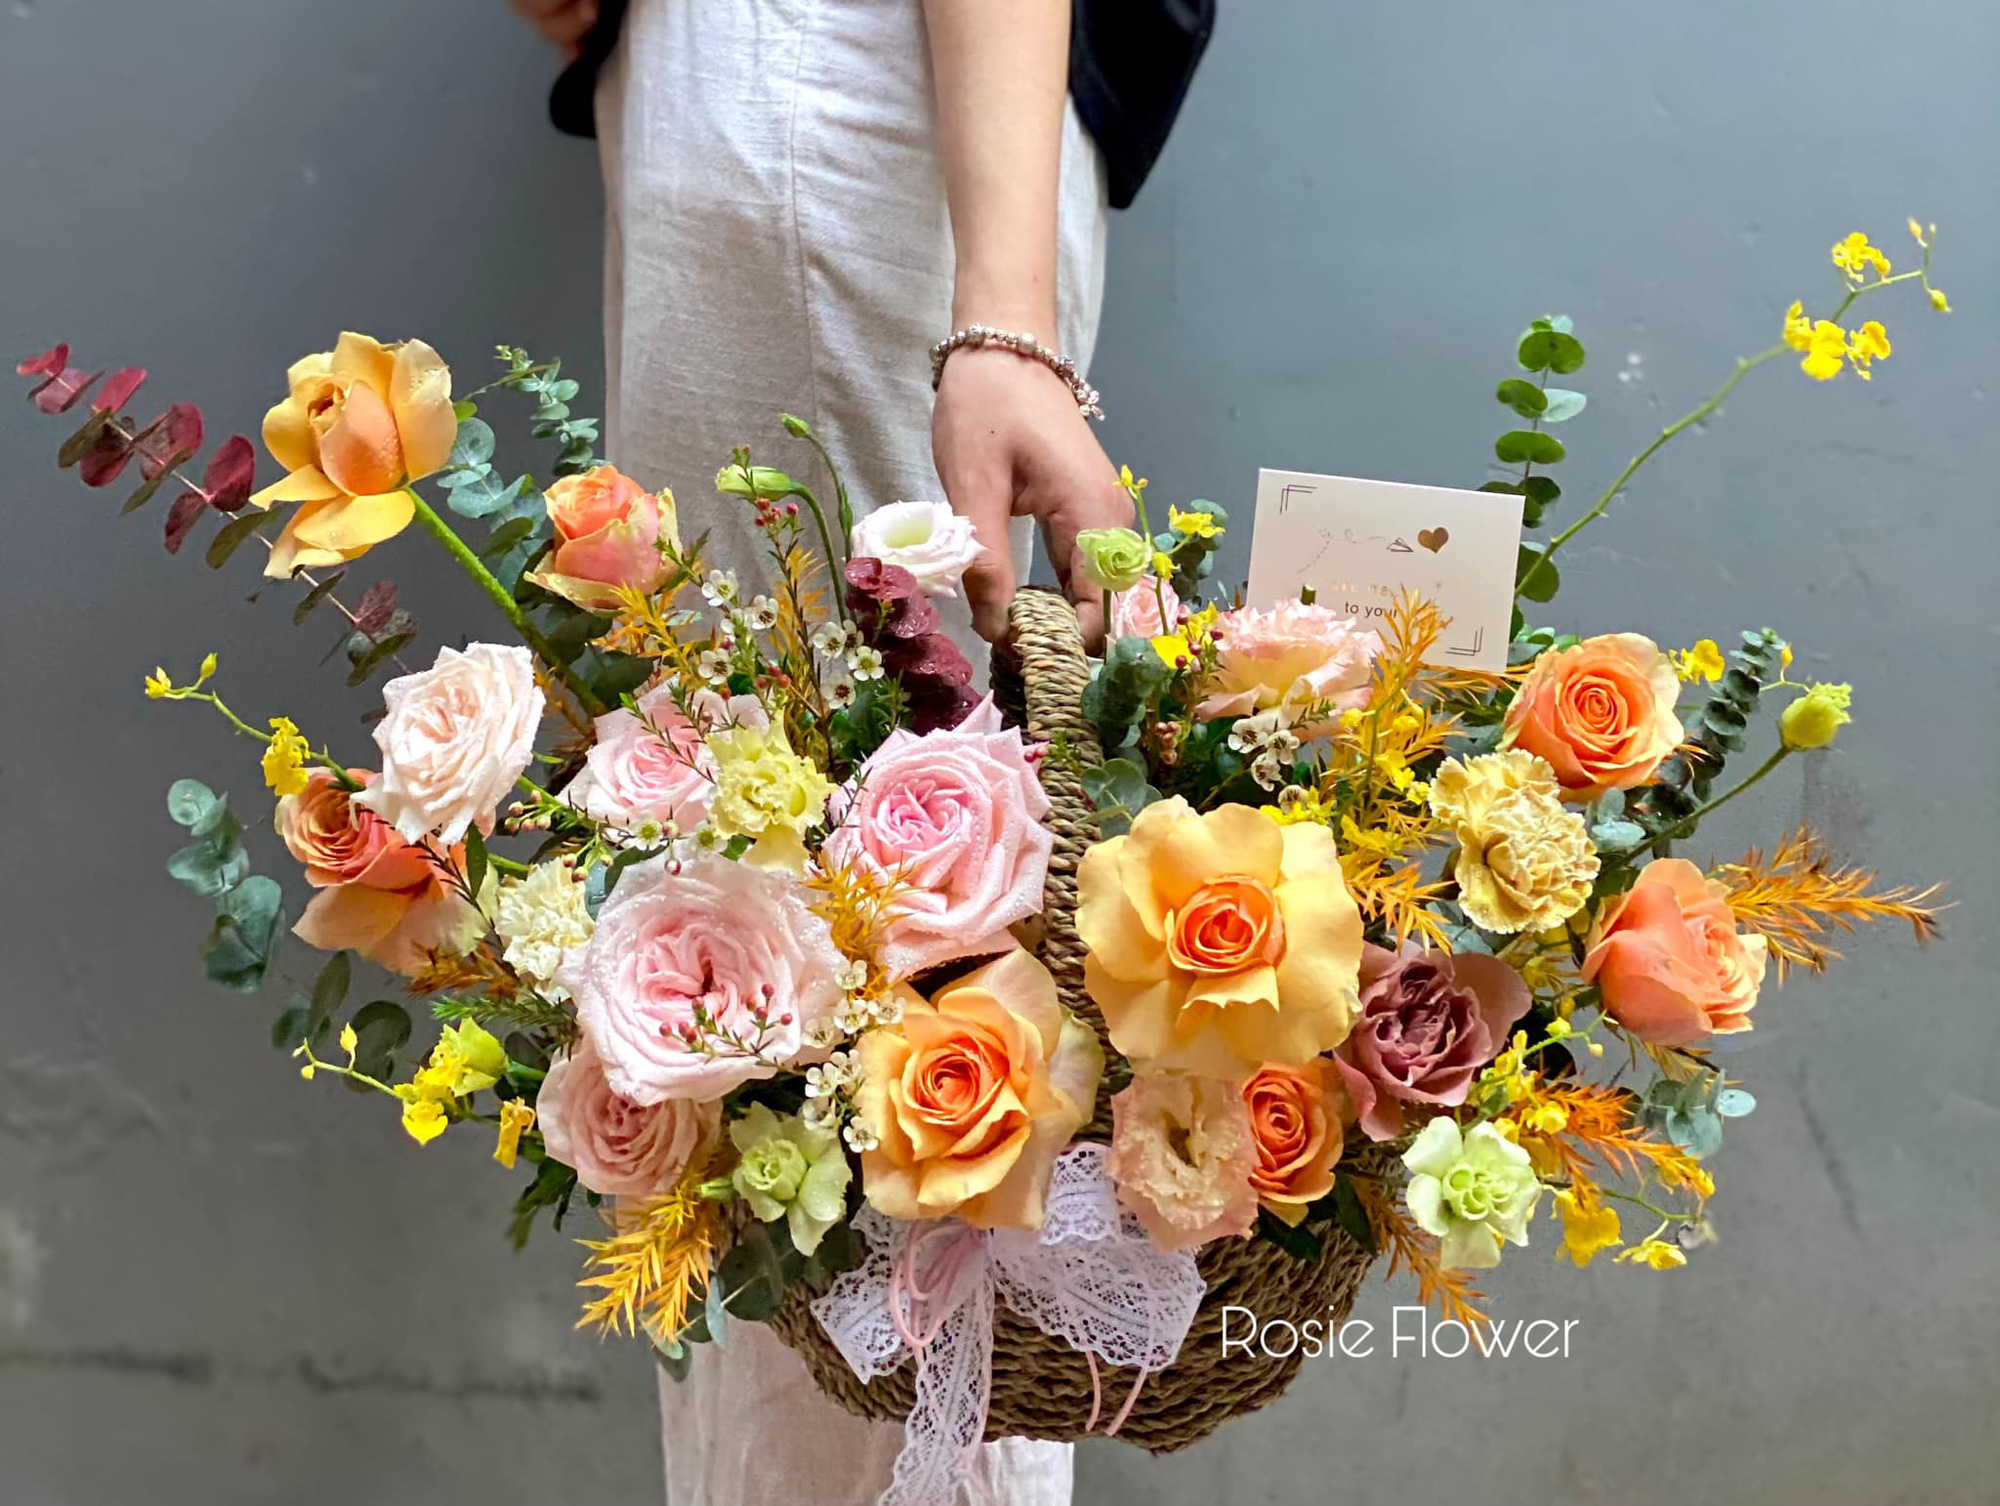 Các mẫu hoa tươi đẹp nhất cho ngày 20/10 đốn tim phụ nữ – Công ty hoa tươi